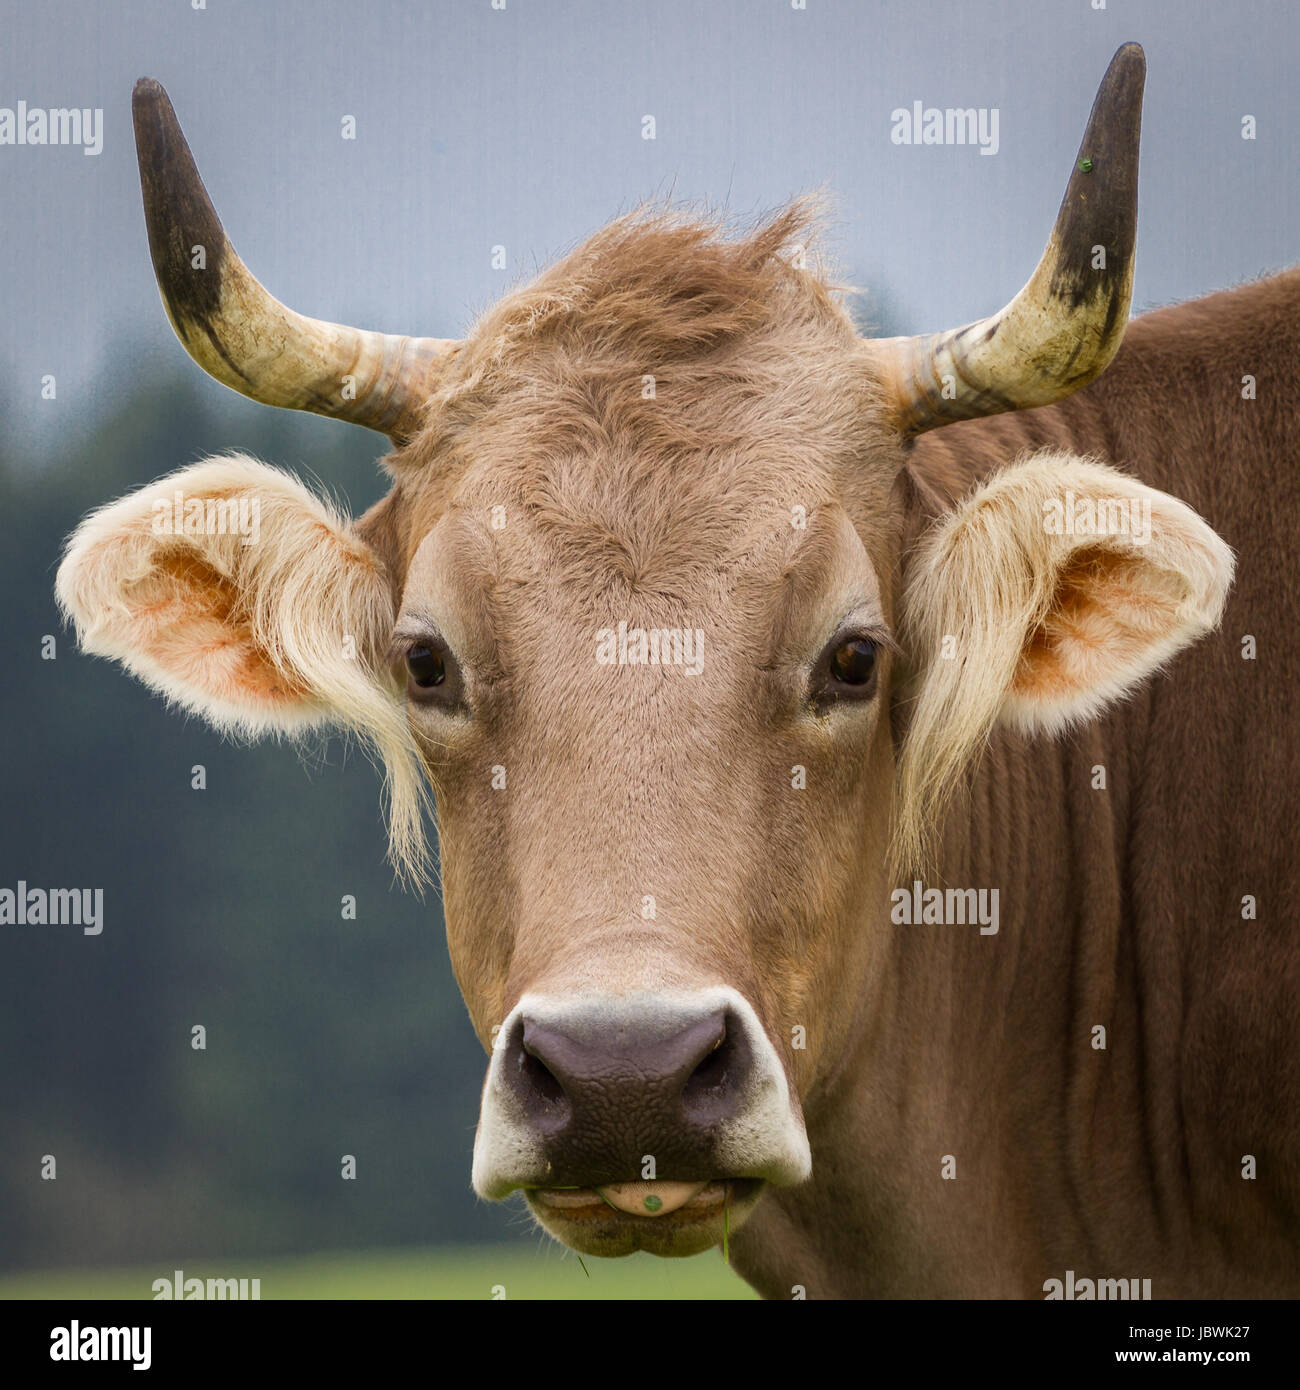 Eine wirklich hübsche braune Kuh schaut mit aufgerichteten Ohren direkt in die Kamera. Stock Photo